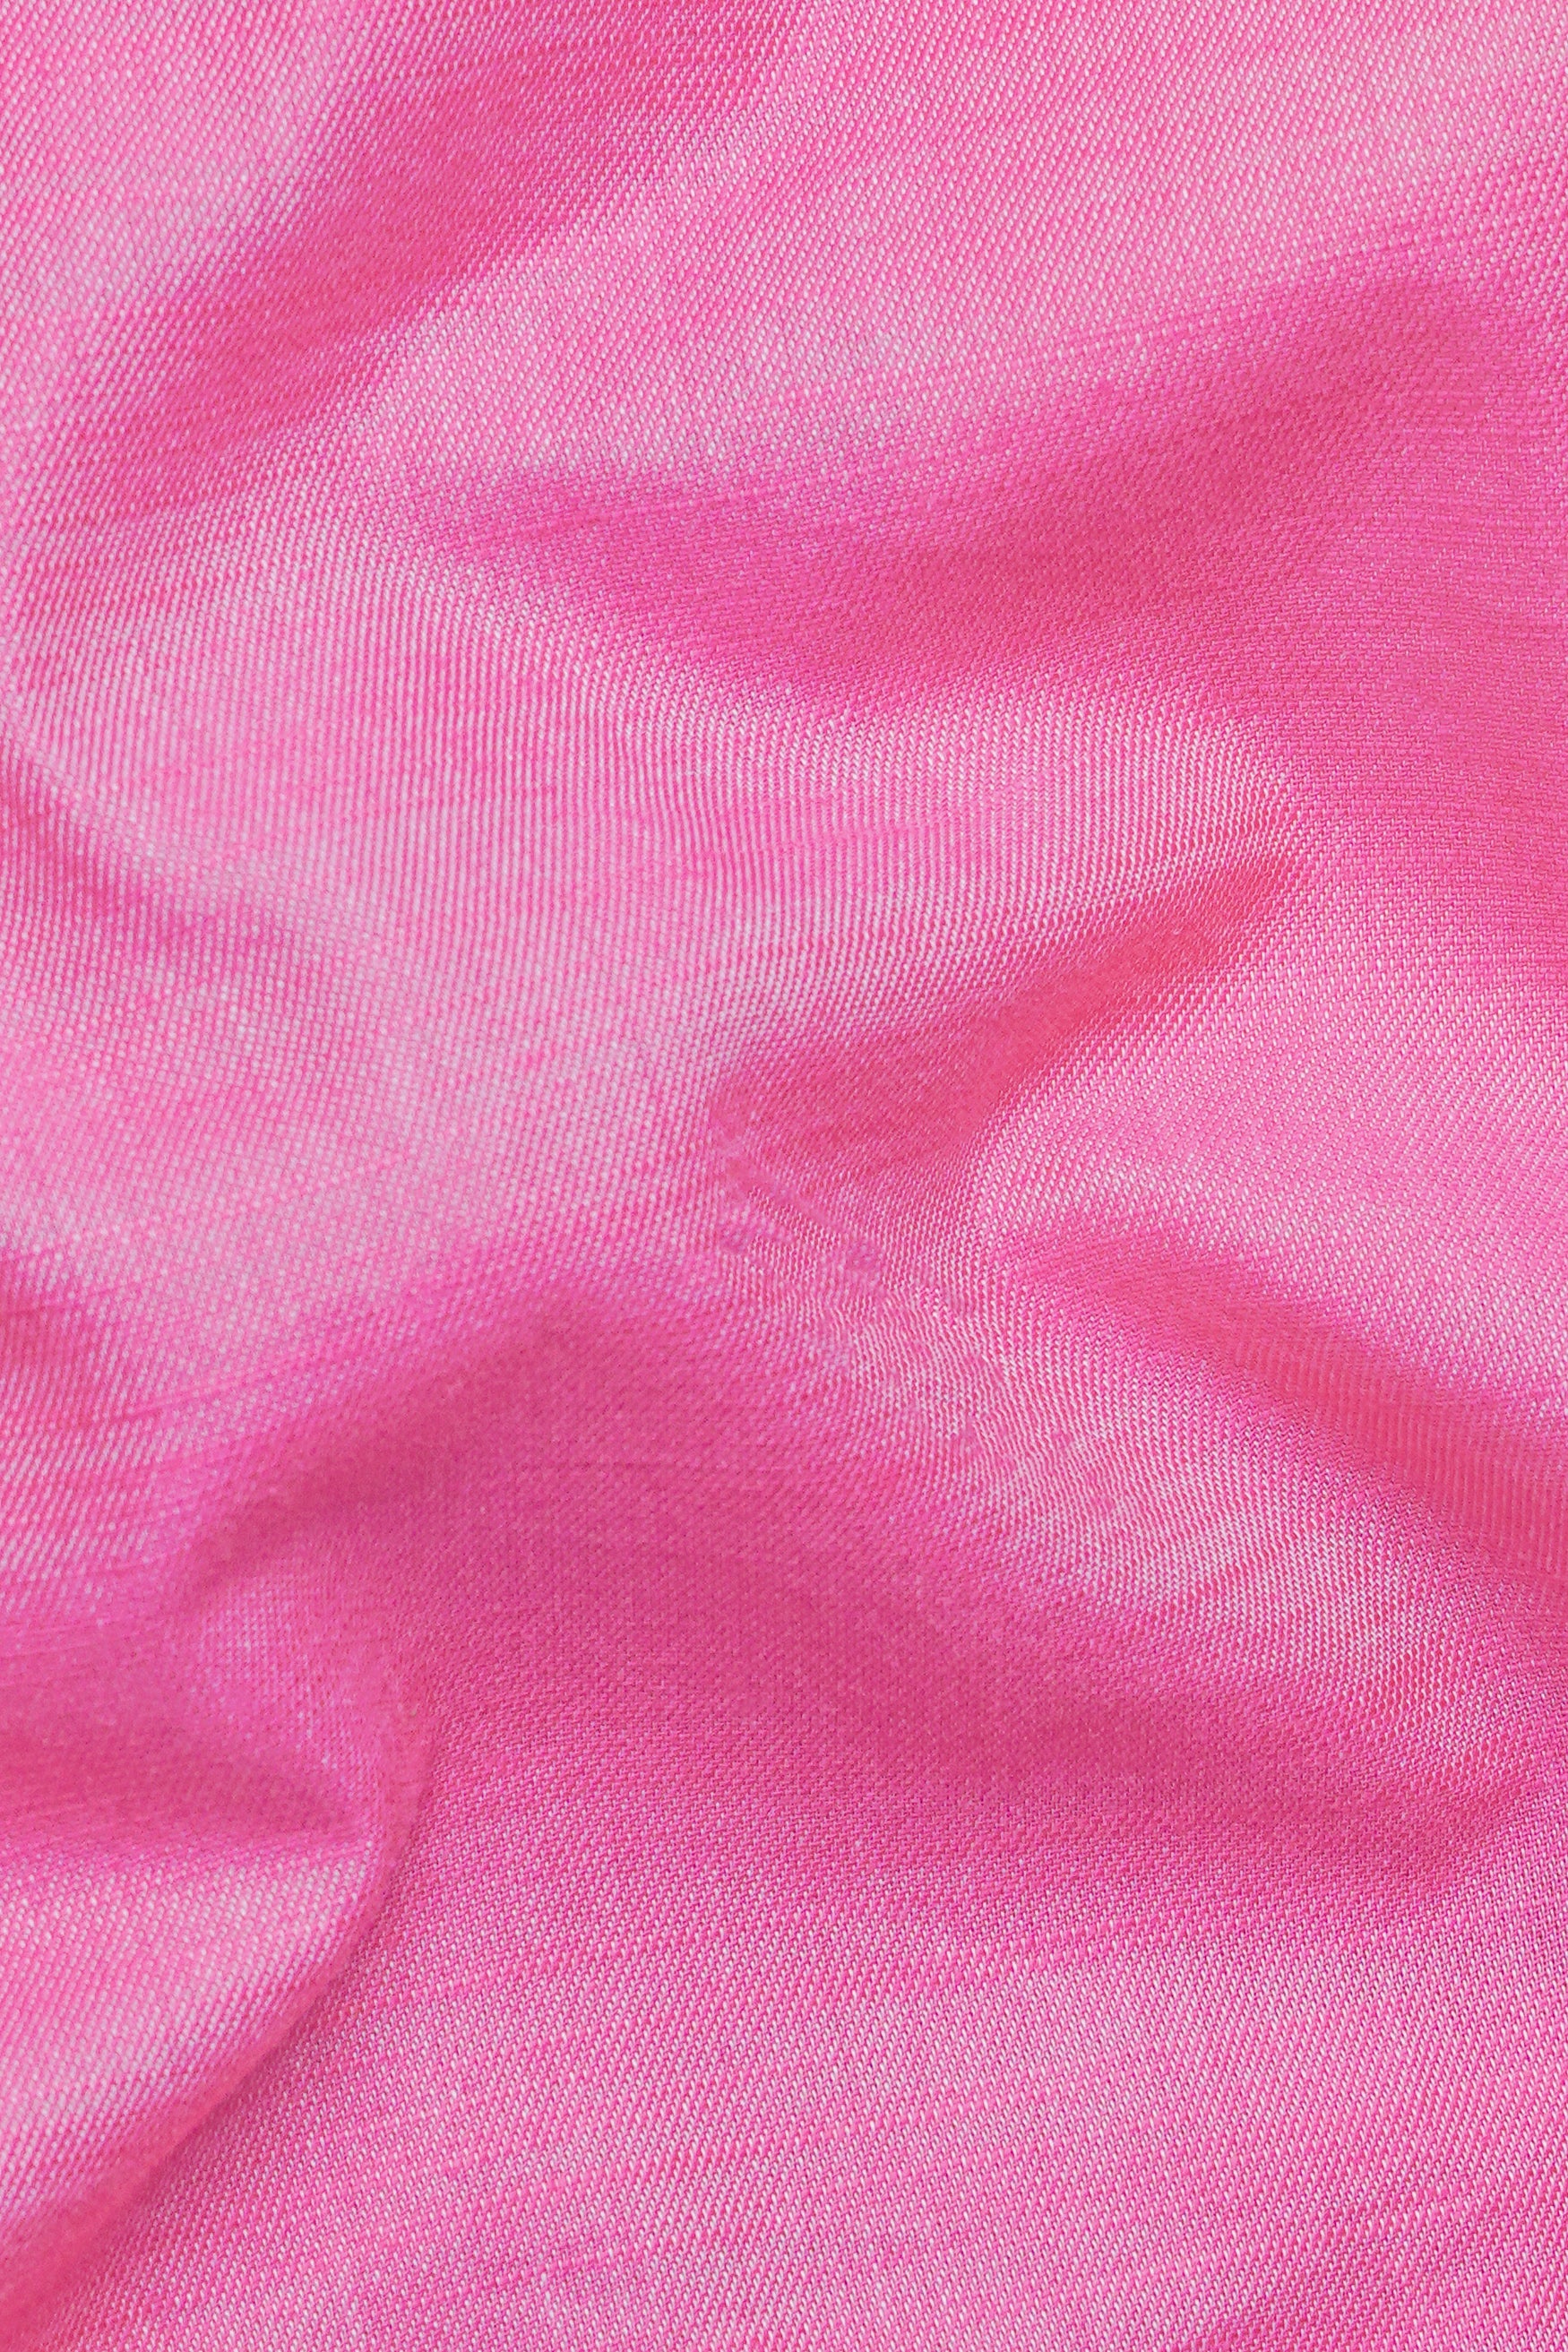 Taffy Pink Chambray Shorts SR344-28,  SR344-30,  SR344-32,  SR344-34,  SR344-36,  SR344-38,  SR344-40,  SR344-42,  SR344-44